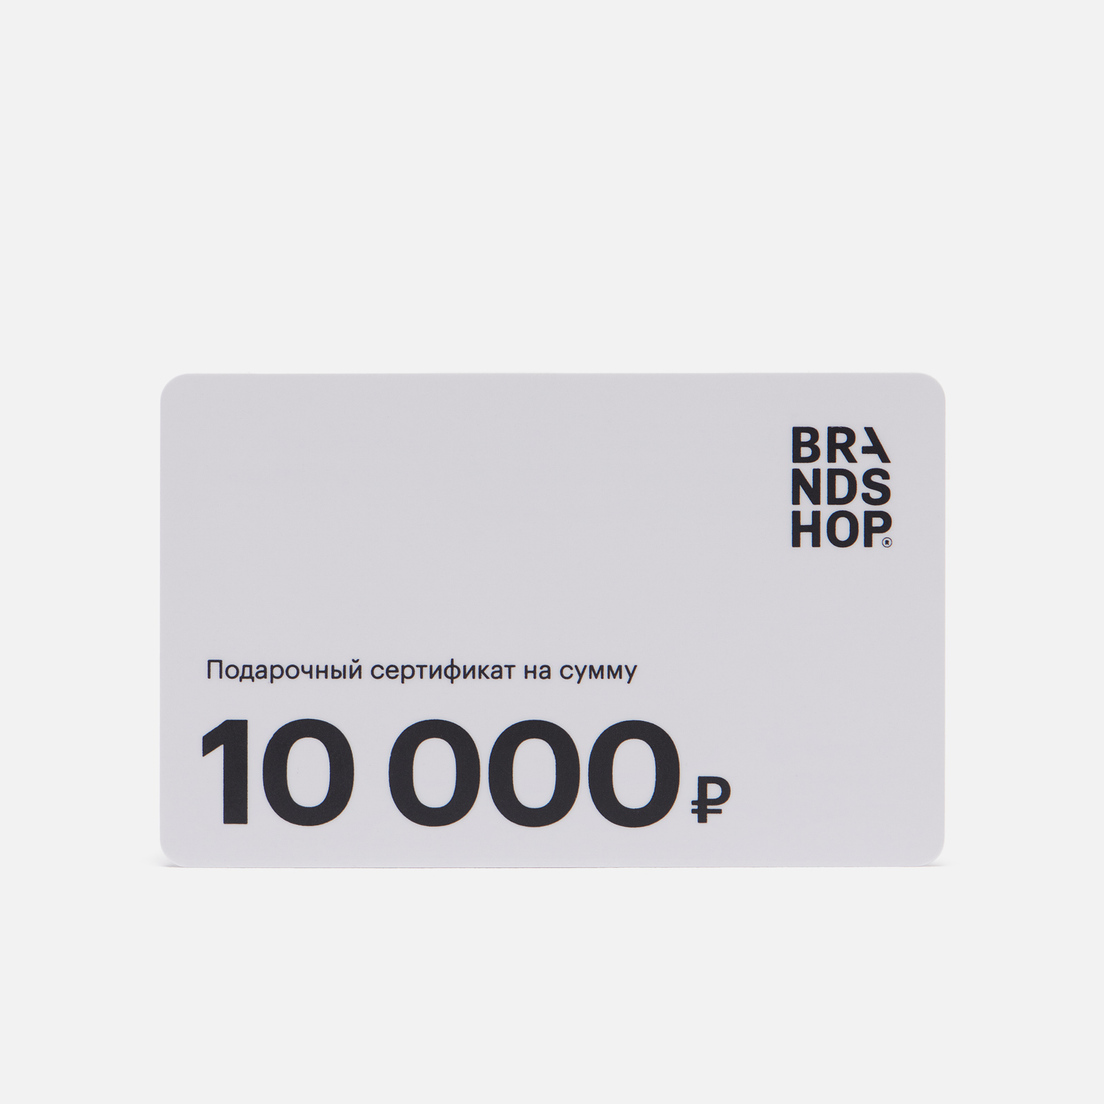 BRANDSHOP Подарочный сертификат на 10 000 руб.